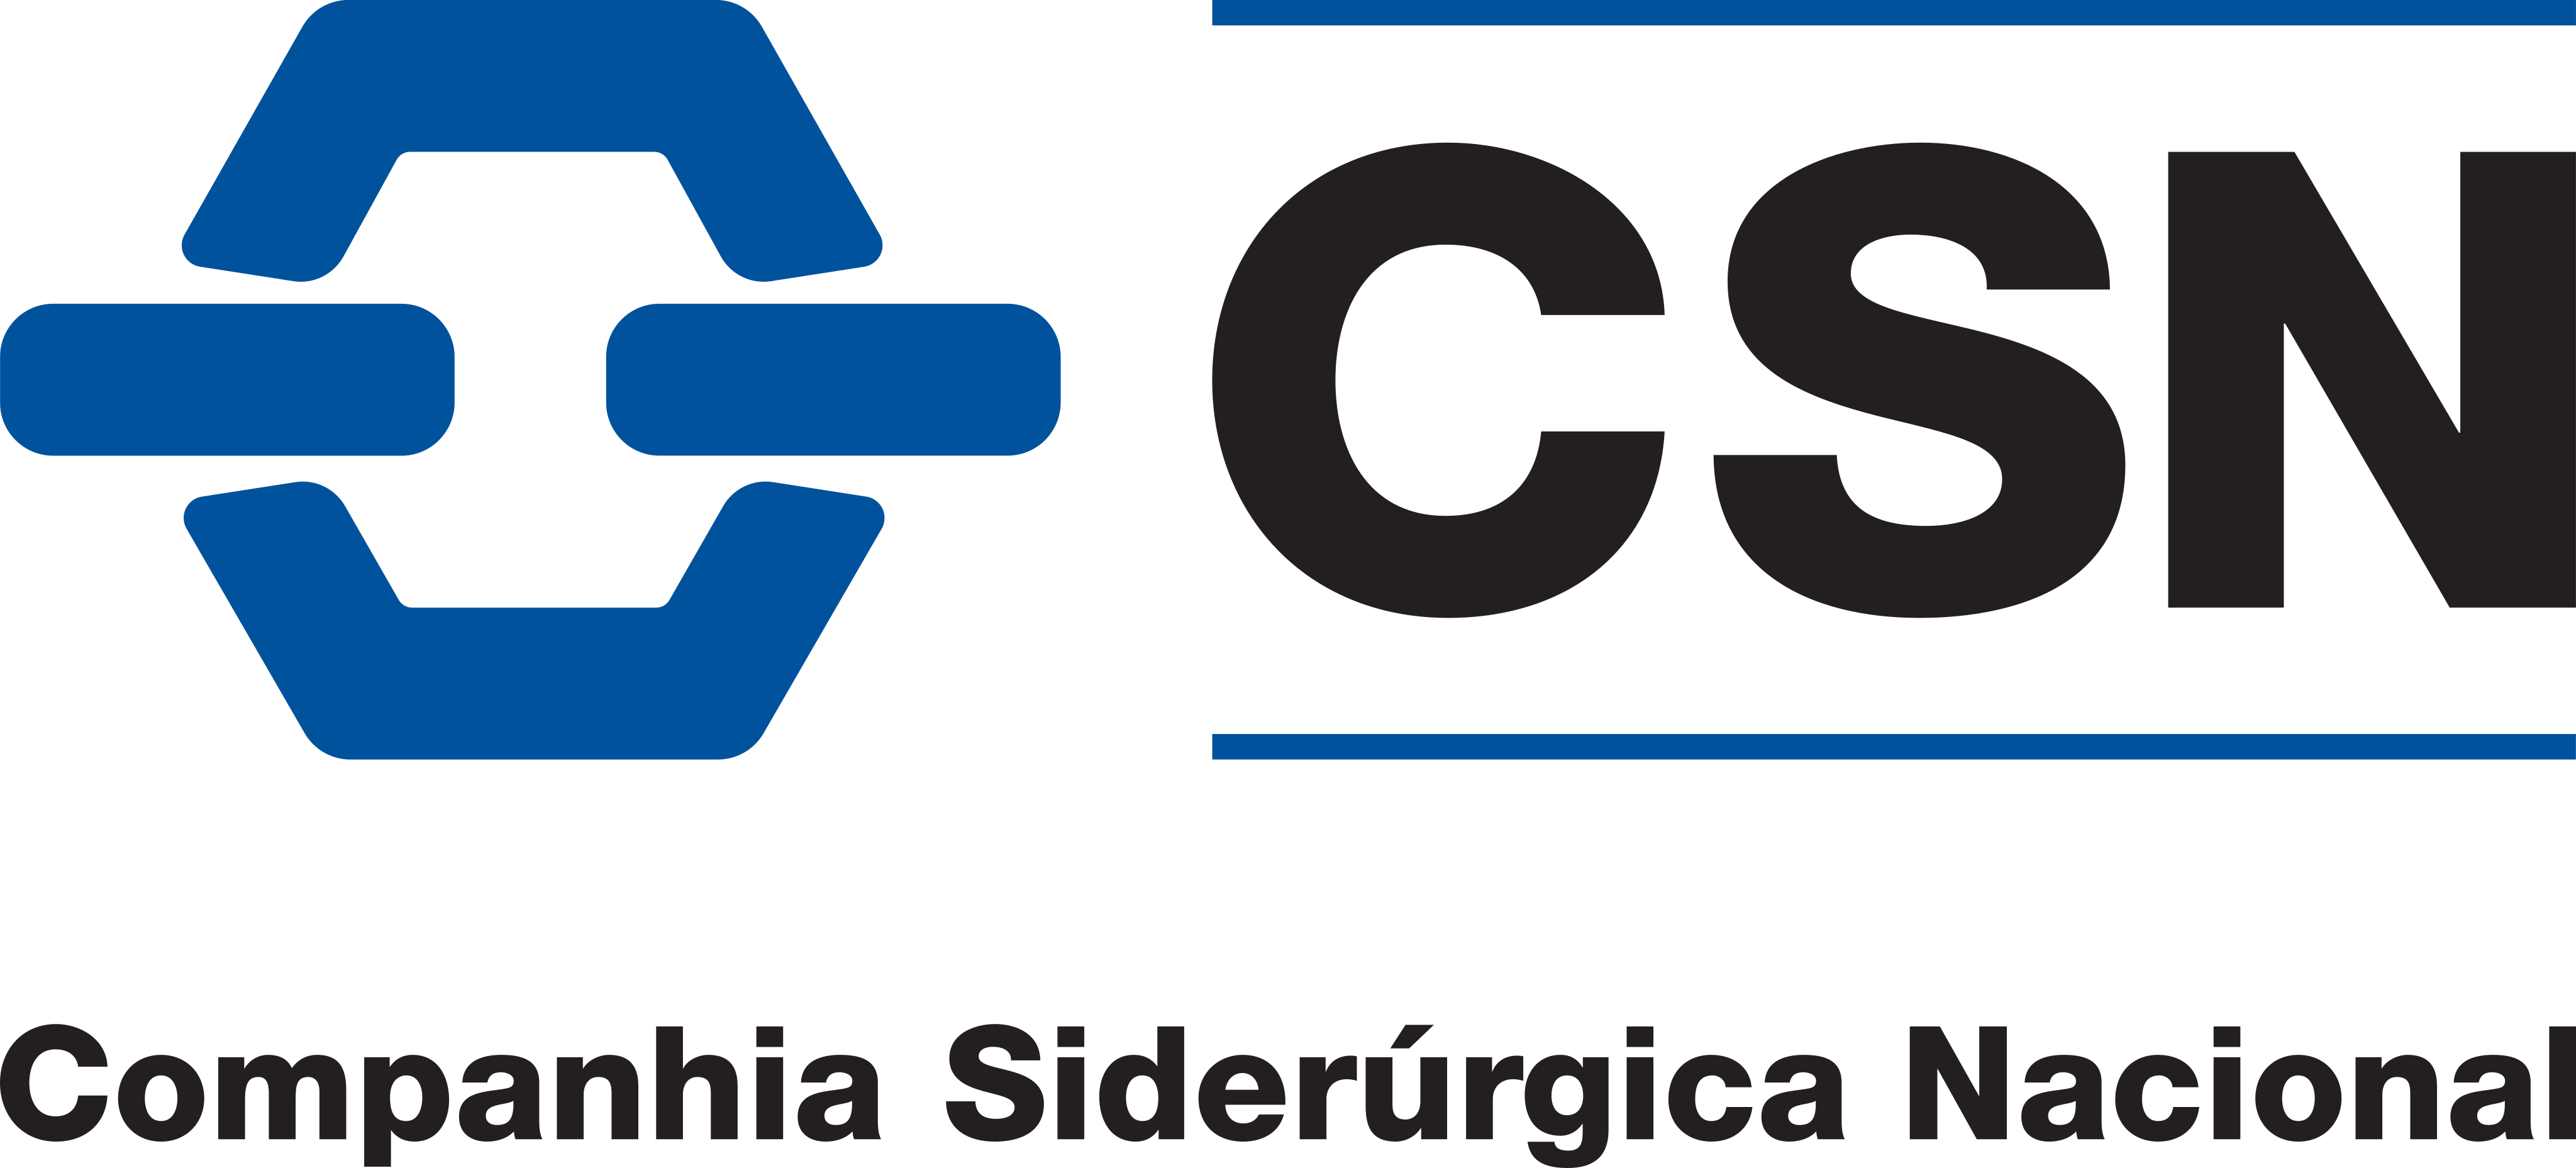 csn logo 1